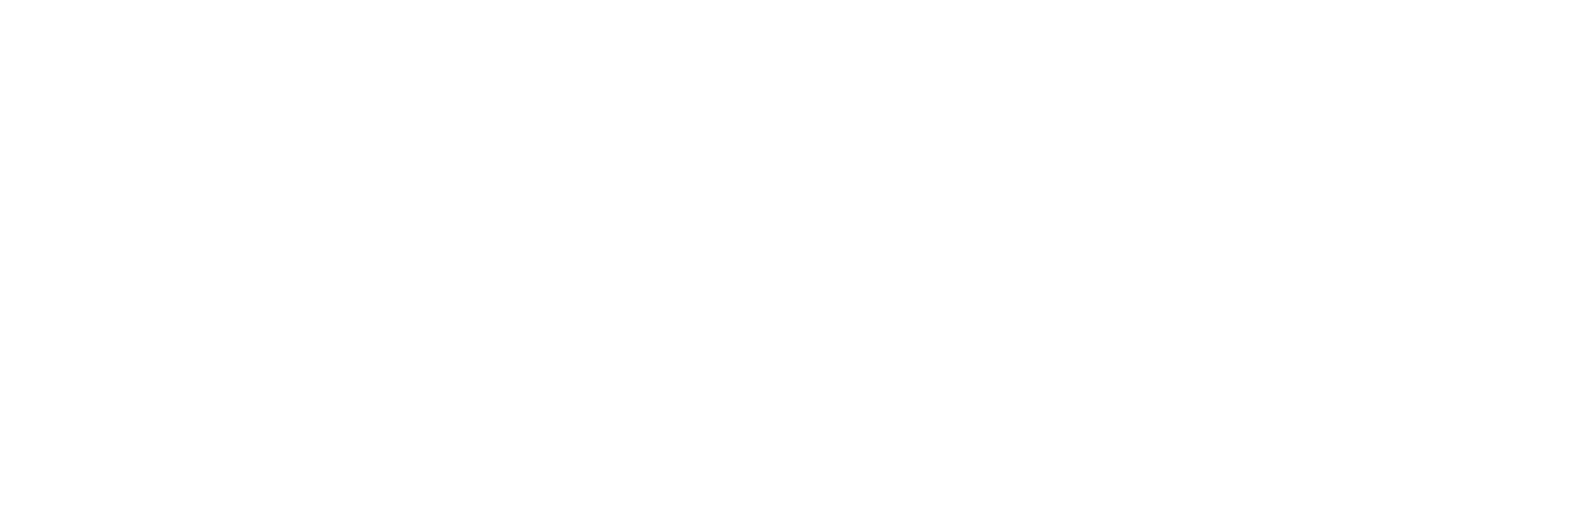 Baidu logo large for dark backgrounds (transparent PNG)